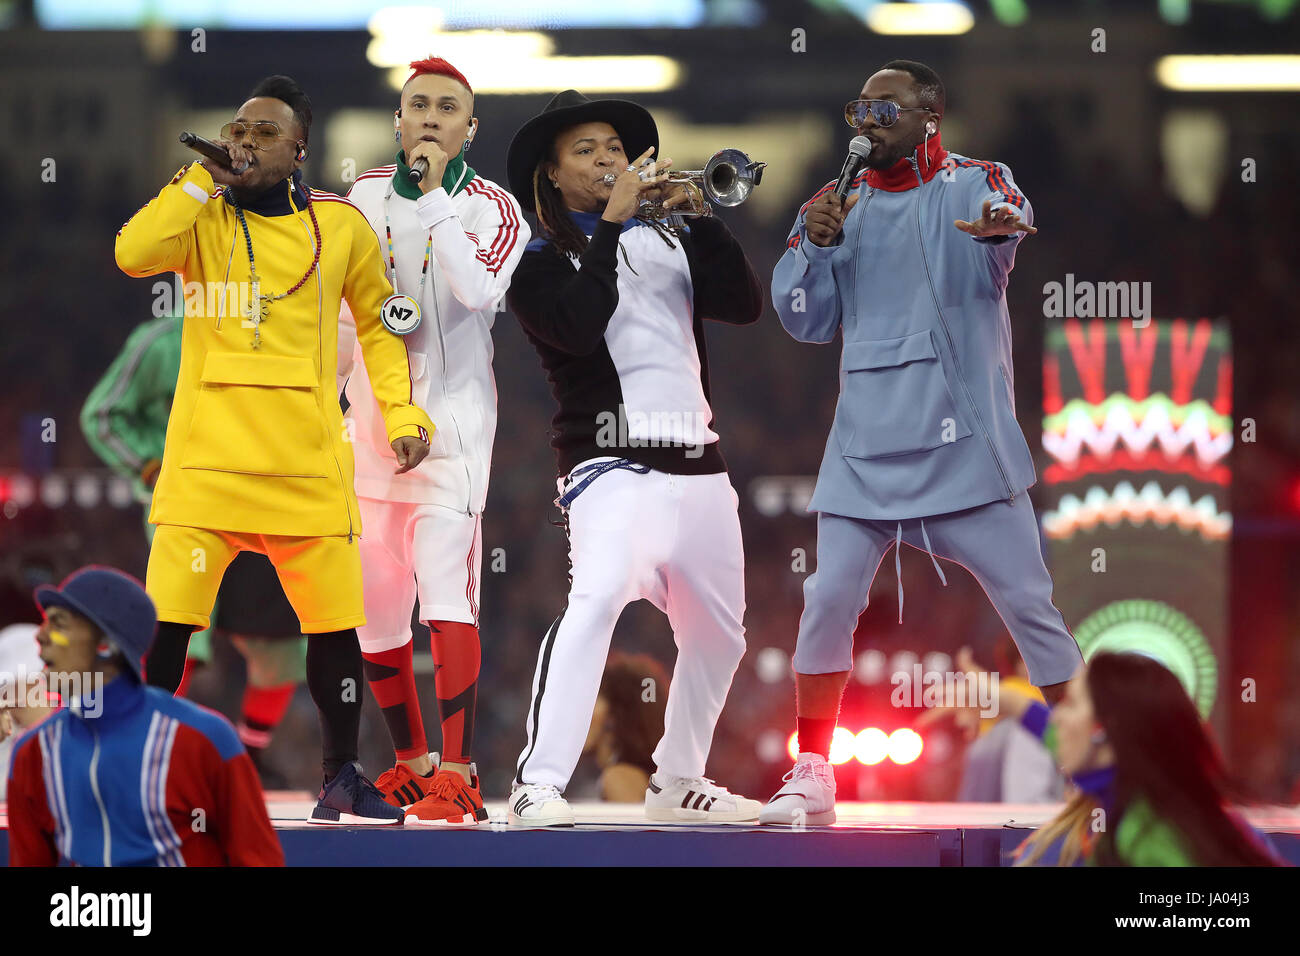 Apl.de.ap (à gauche), will.i.am (à droite) et de Tabou (deuxième à gauche) de Black Eyed Peas effectuer avant la finale de la Ligue des champions au Stade National, Cardiff. Banque D'Images